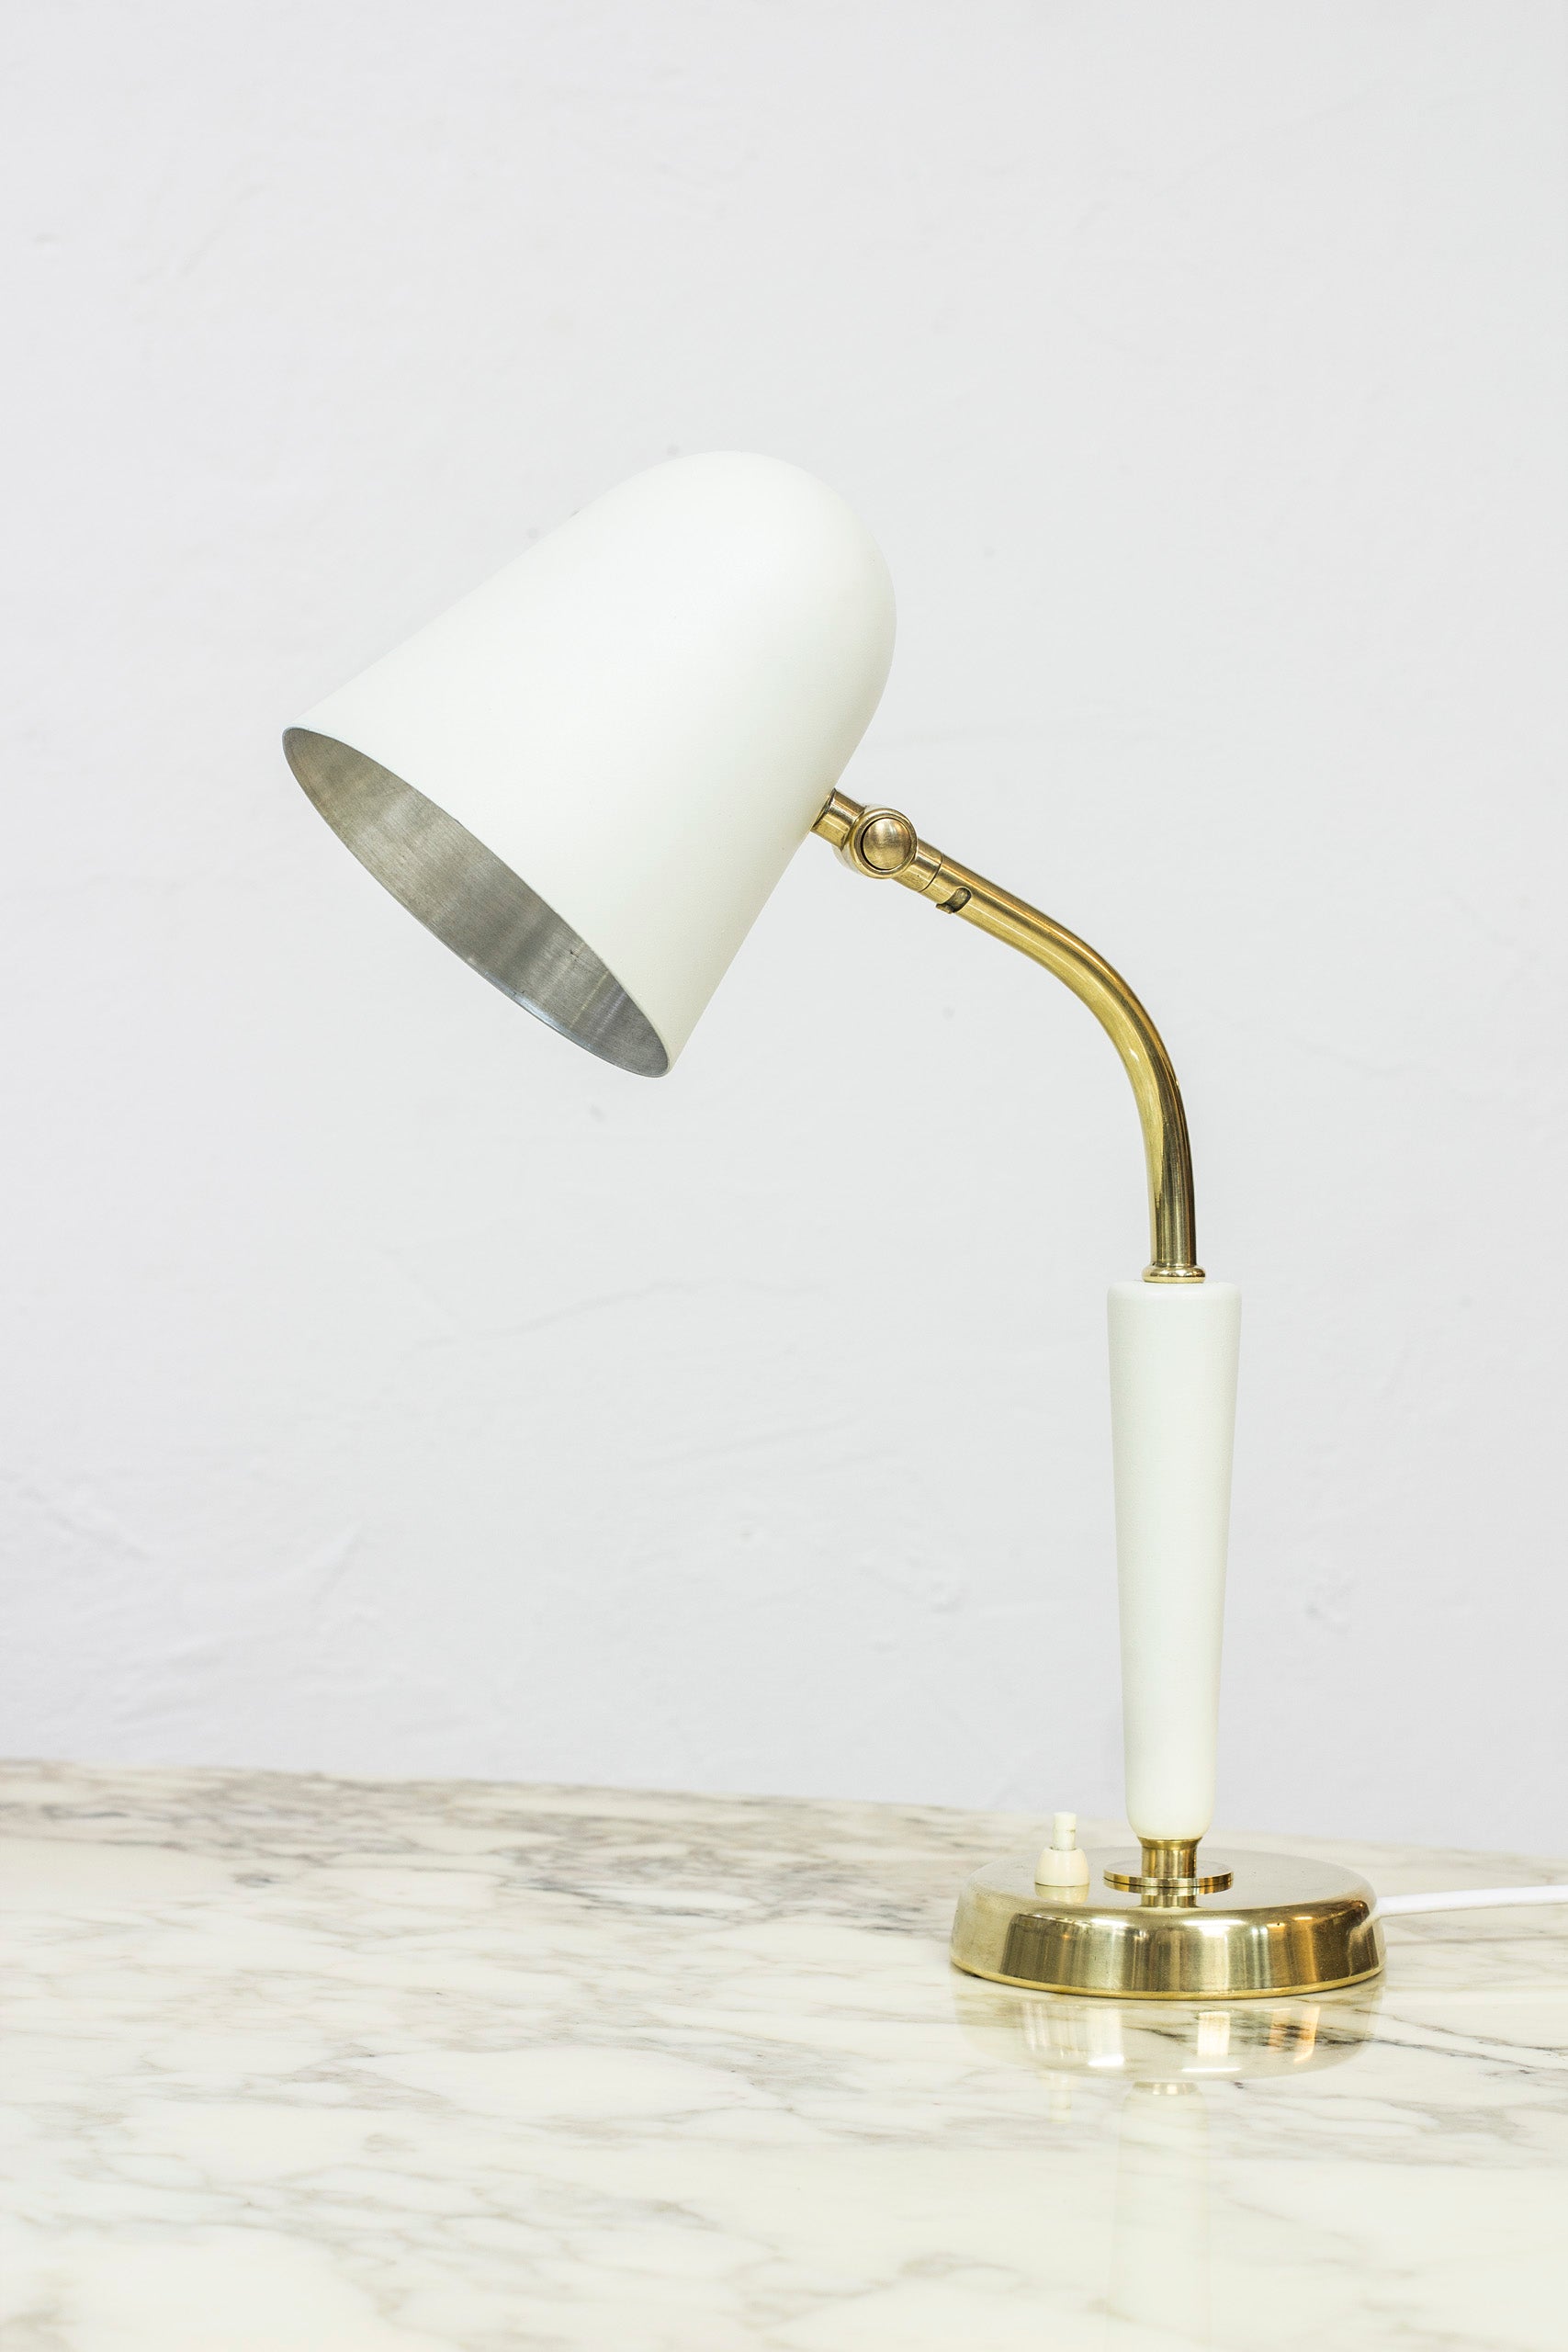 Table lamp by Bertil Brisborg for NK